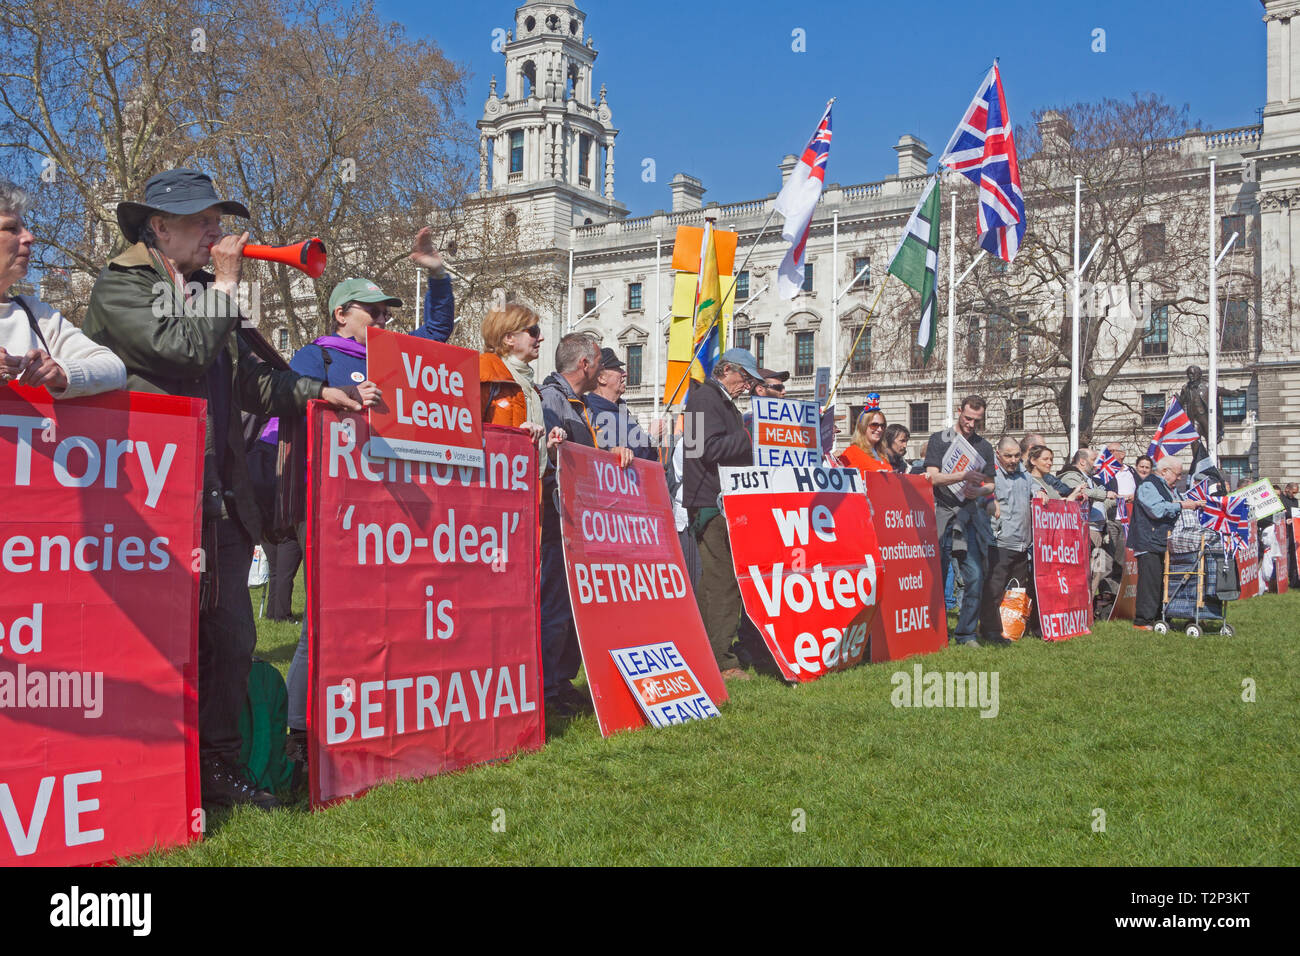 De Londres, Westminster. Dejar simpatizantes reunidos en la Plaza del Parlamento el 29 de marzo de 2019, el original Brexit "dejando de día". Foto de stock